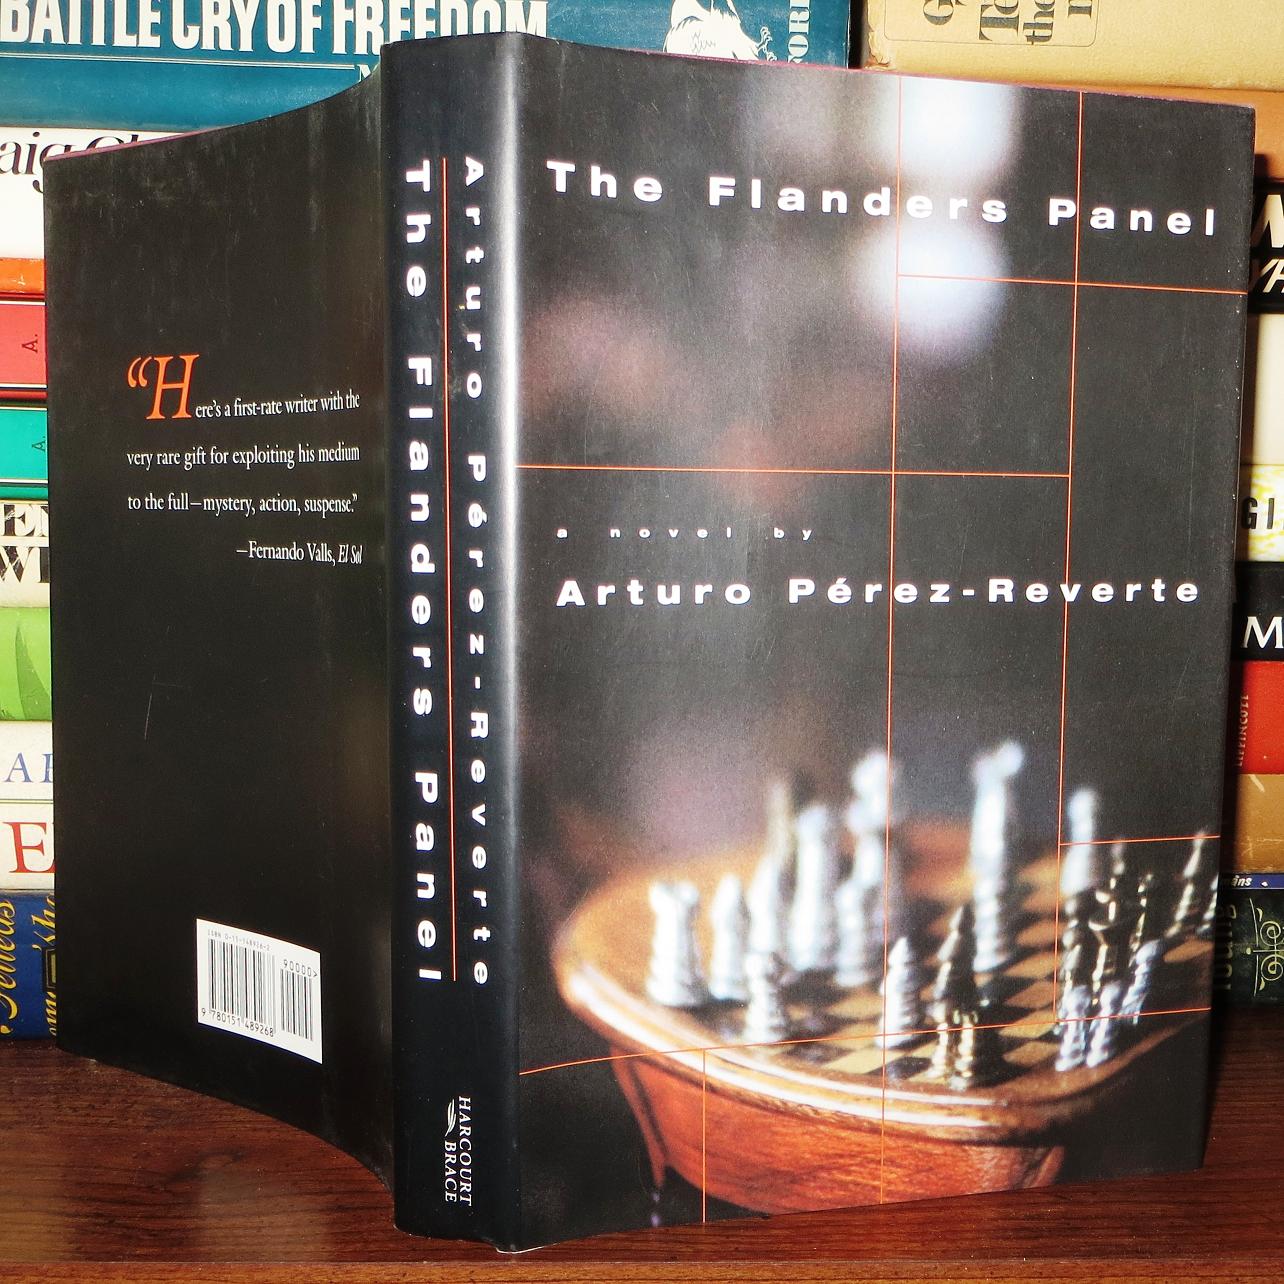 THE FLANDERS PANEL by Arturo Pérez-Reverte